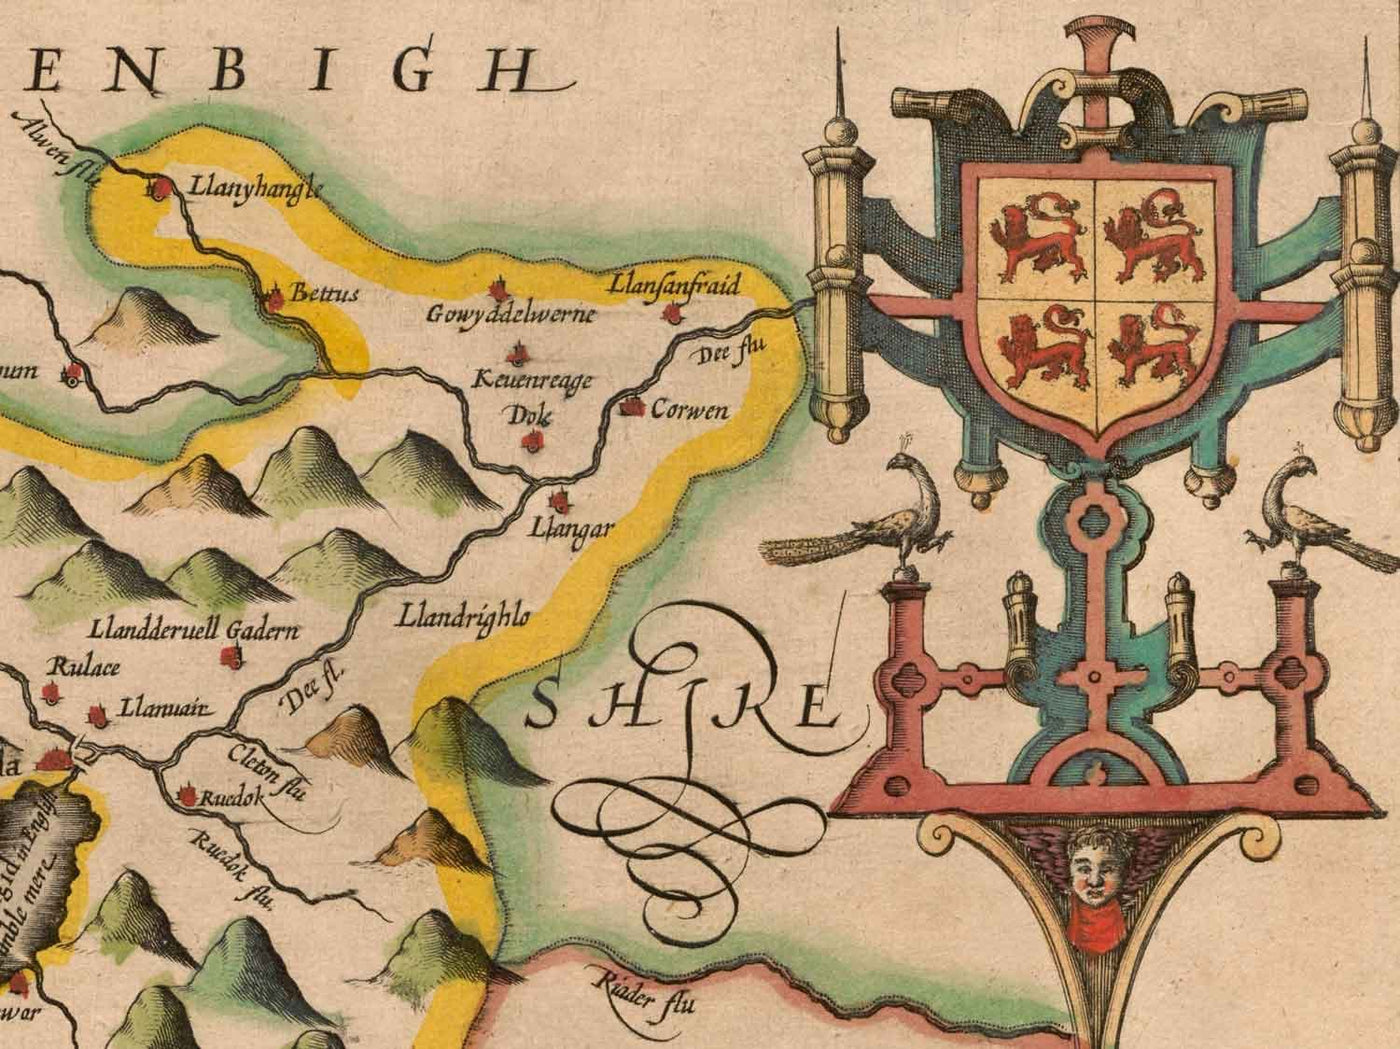 Alte Karte von Merionethshire, Wales im Jahr 1611 von John Speed - Dolgellau, Aberdyfi, Bala, Barmouth, Harlech, Snowdonia